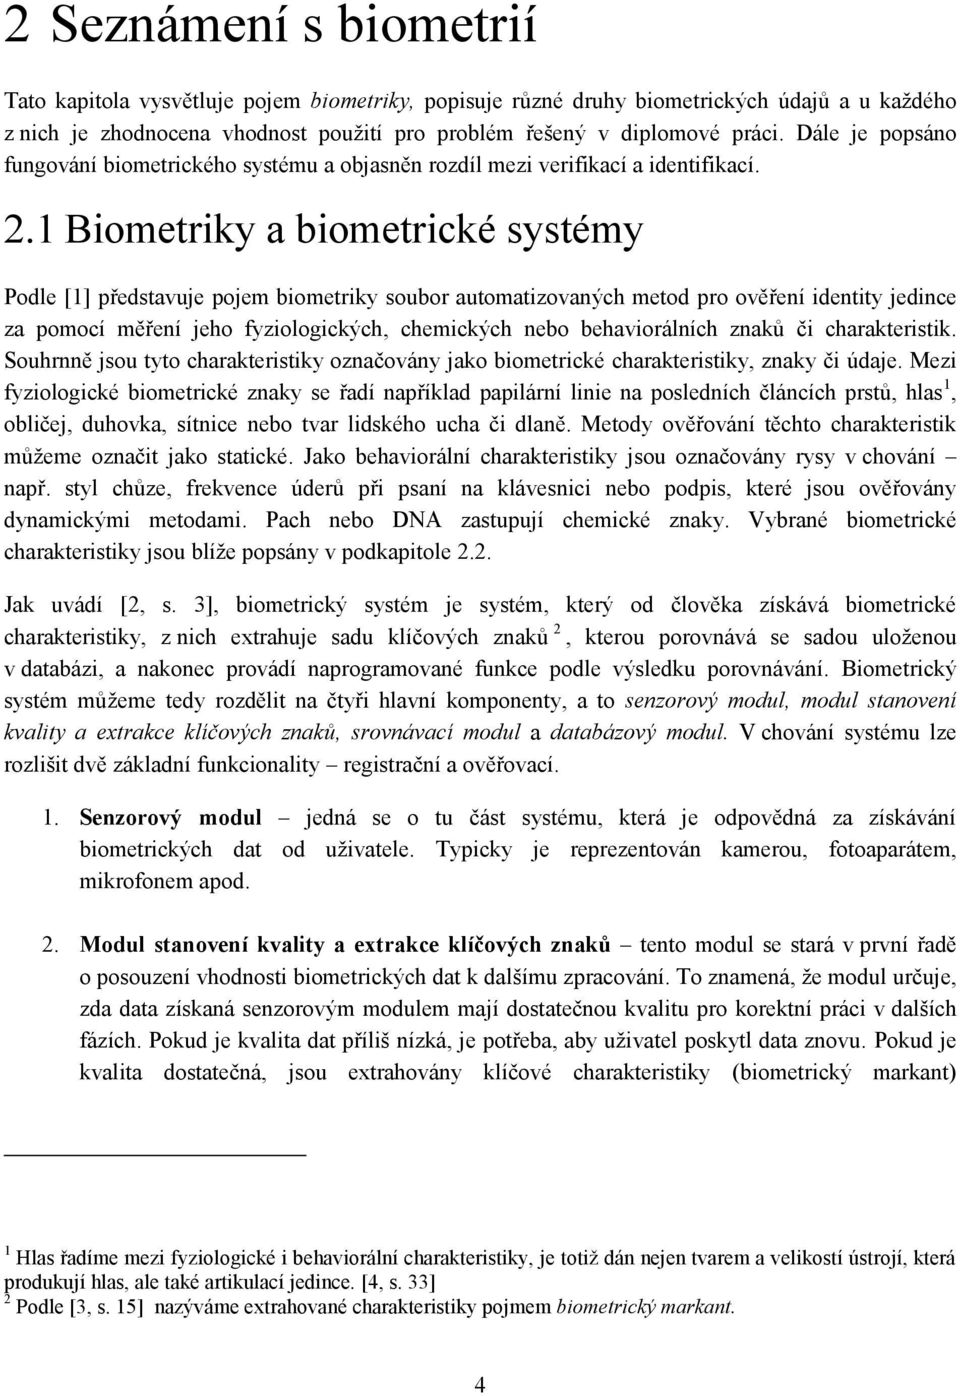 1 Biometriky a biometrické systémy Podle [1] představuje pojem biometriky soubor automatizovaných metod pro ověření identity jedince za pomocí měření jeho fyziologických, chemických nebo